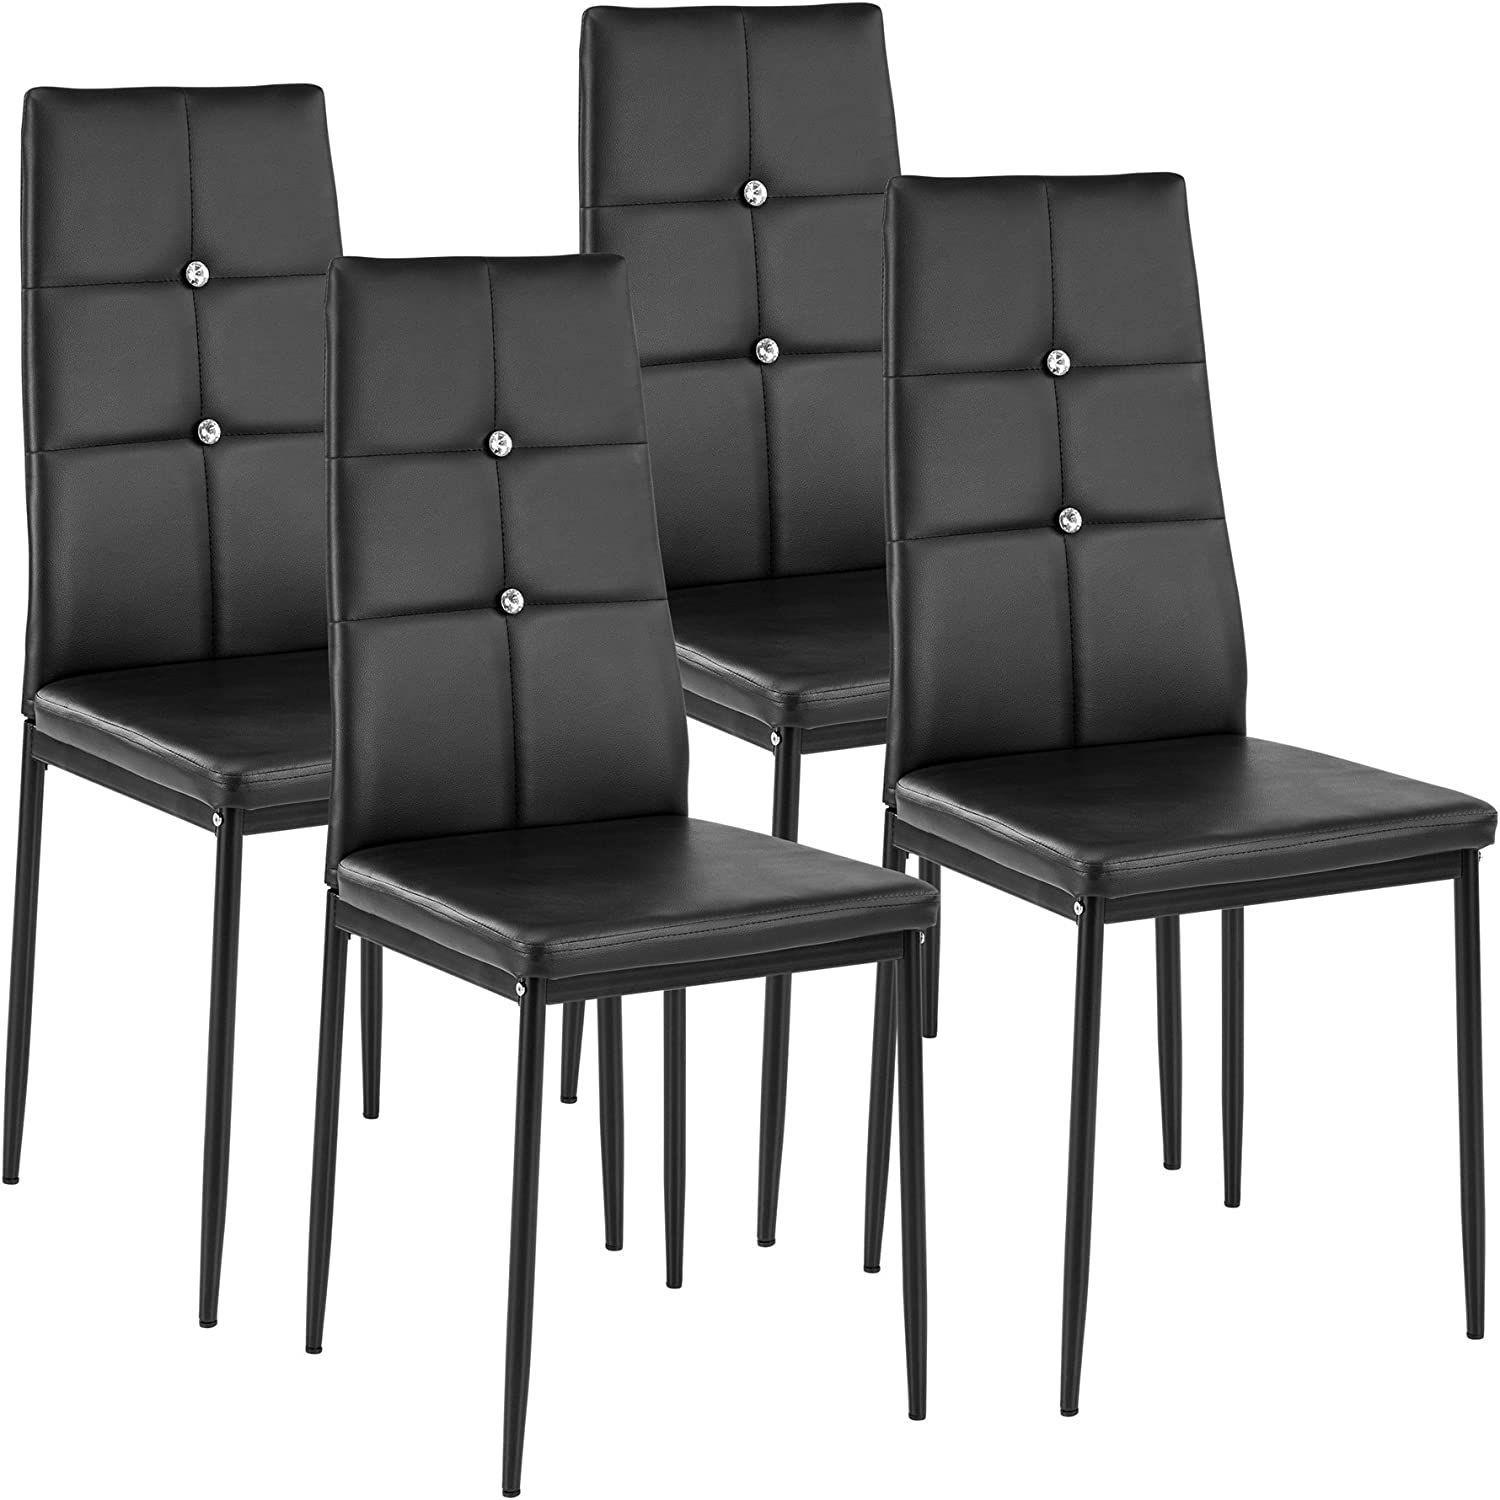 WISOICE | WISOICE Комплект стульев WISOICE / чёрный с кристаллами / мягкое сидение, искусственная кожа, металлические ножки, 4 шт.